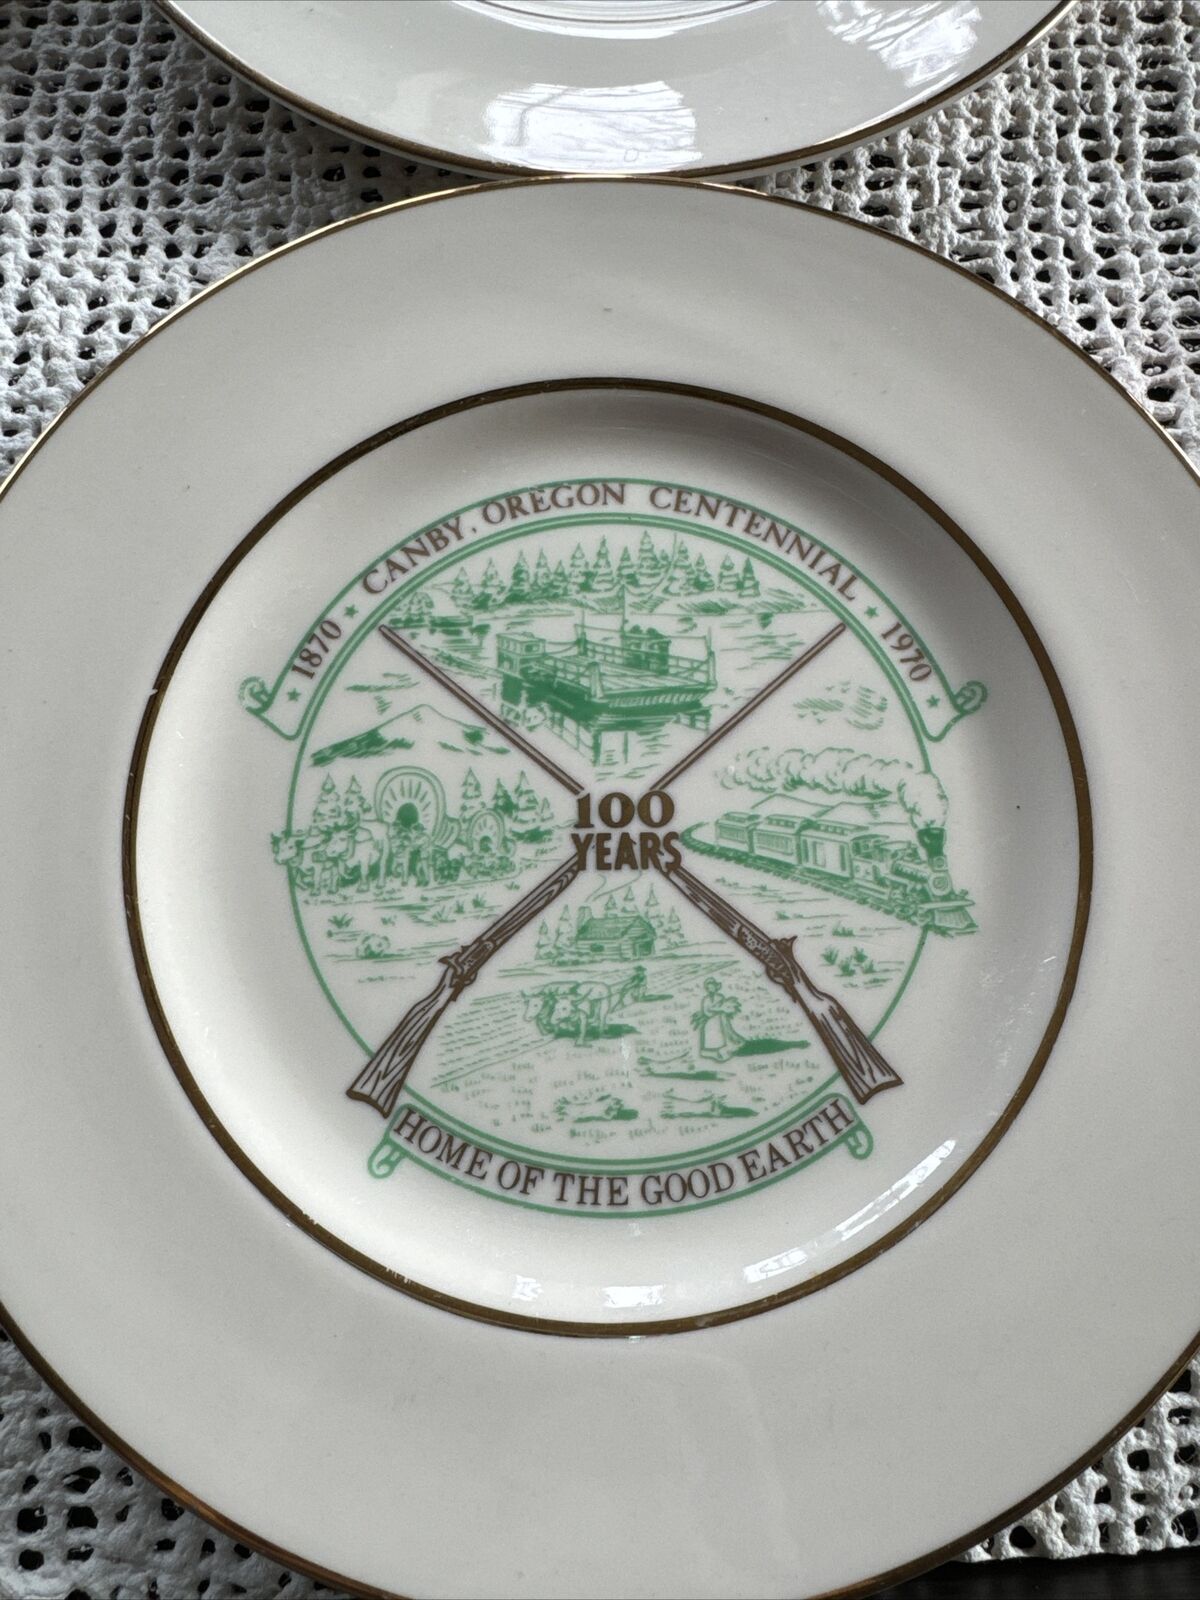 Canby oregon centennial Plates